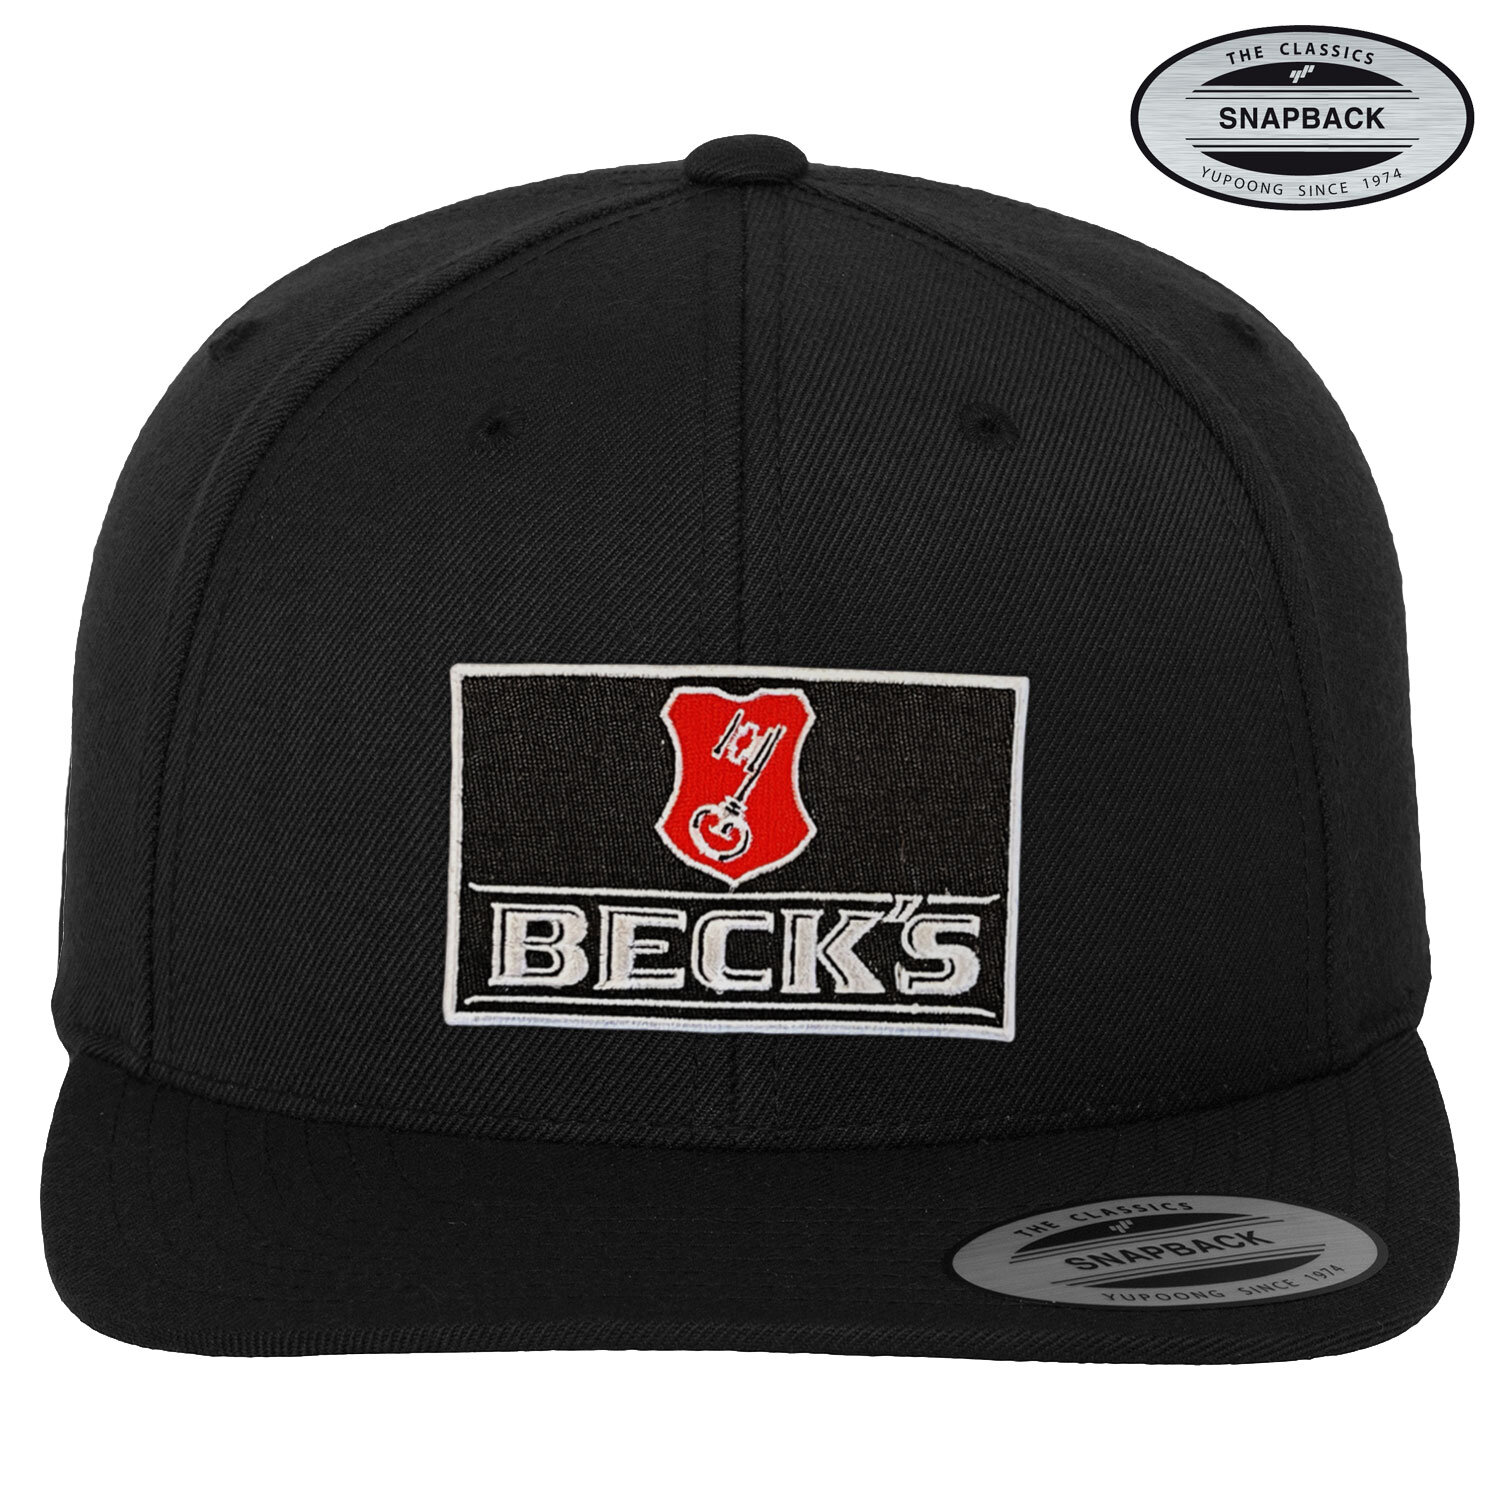 Beck's Beer Patch Premium Snapback Cap